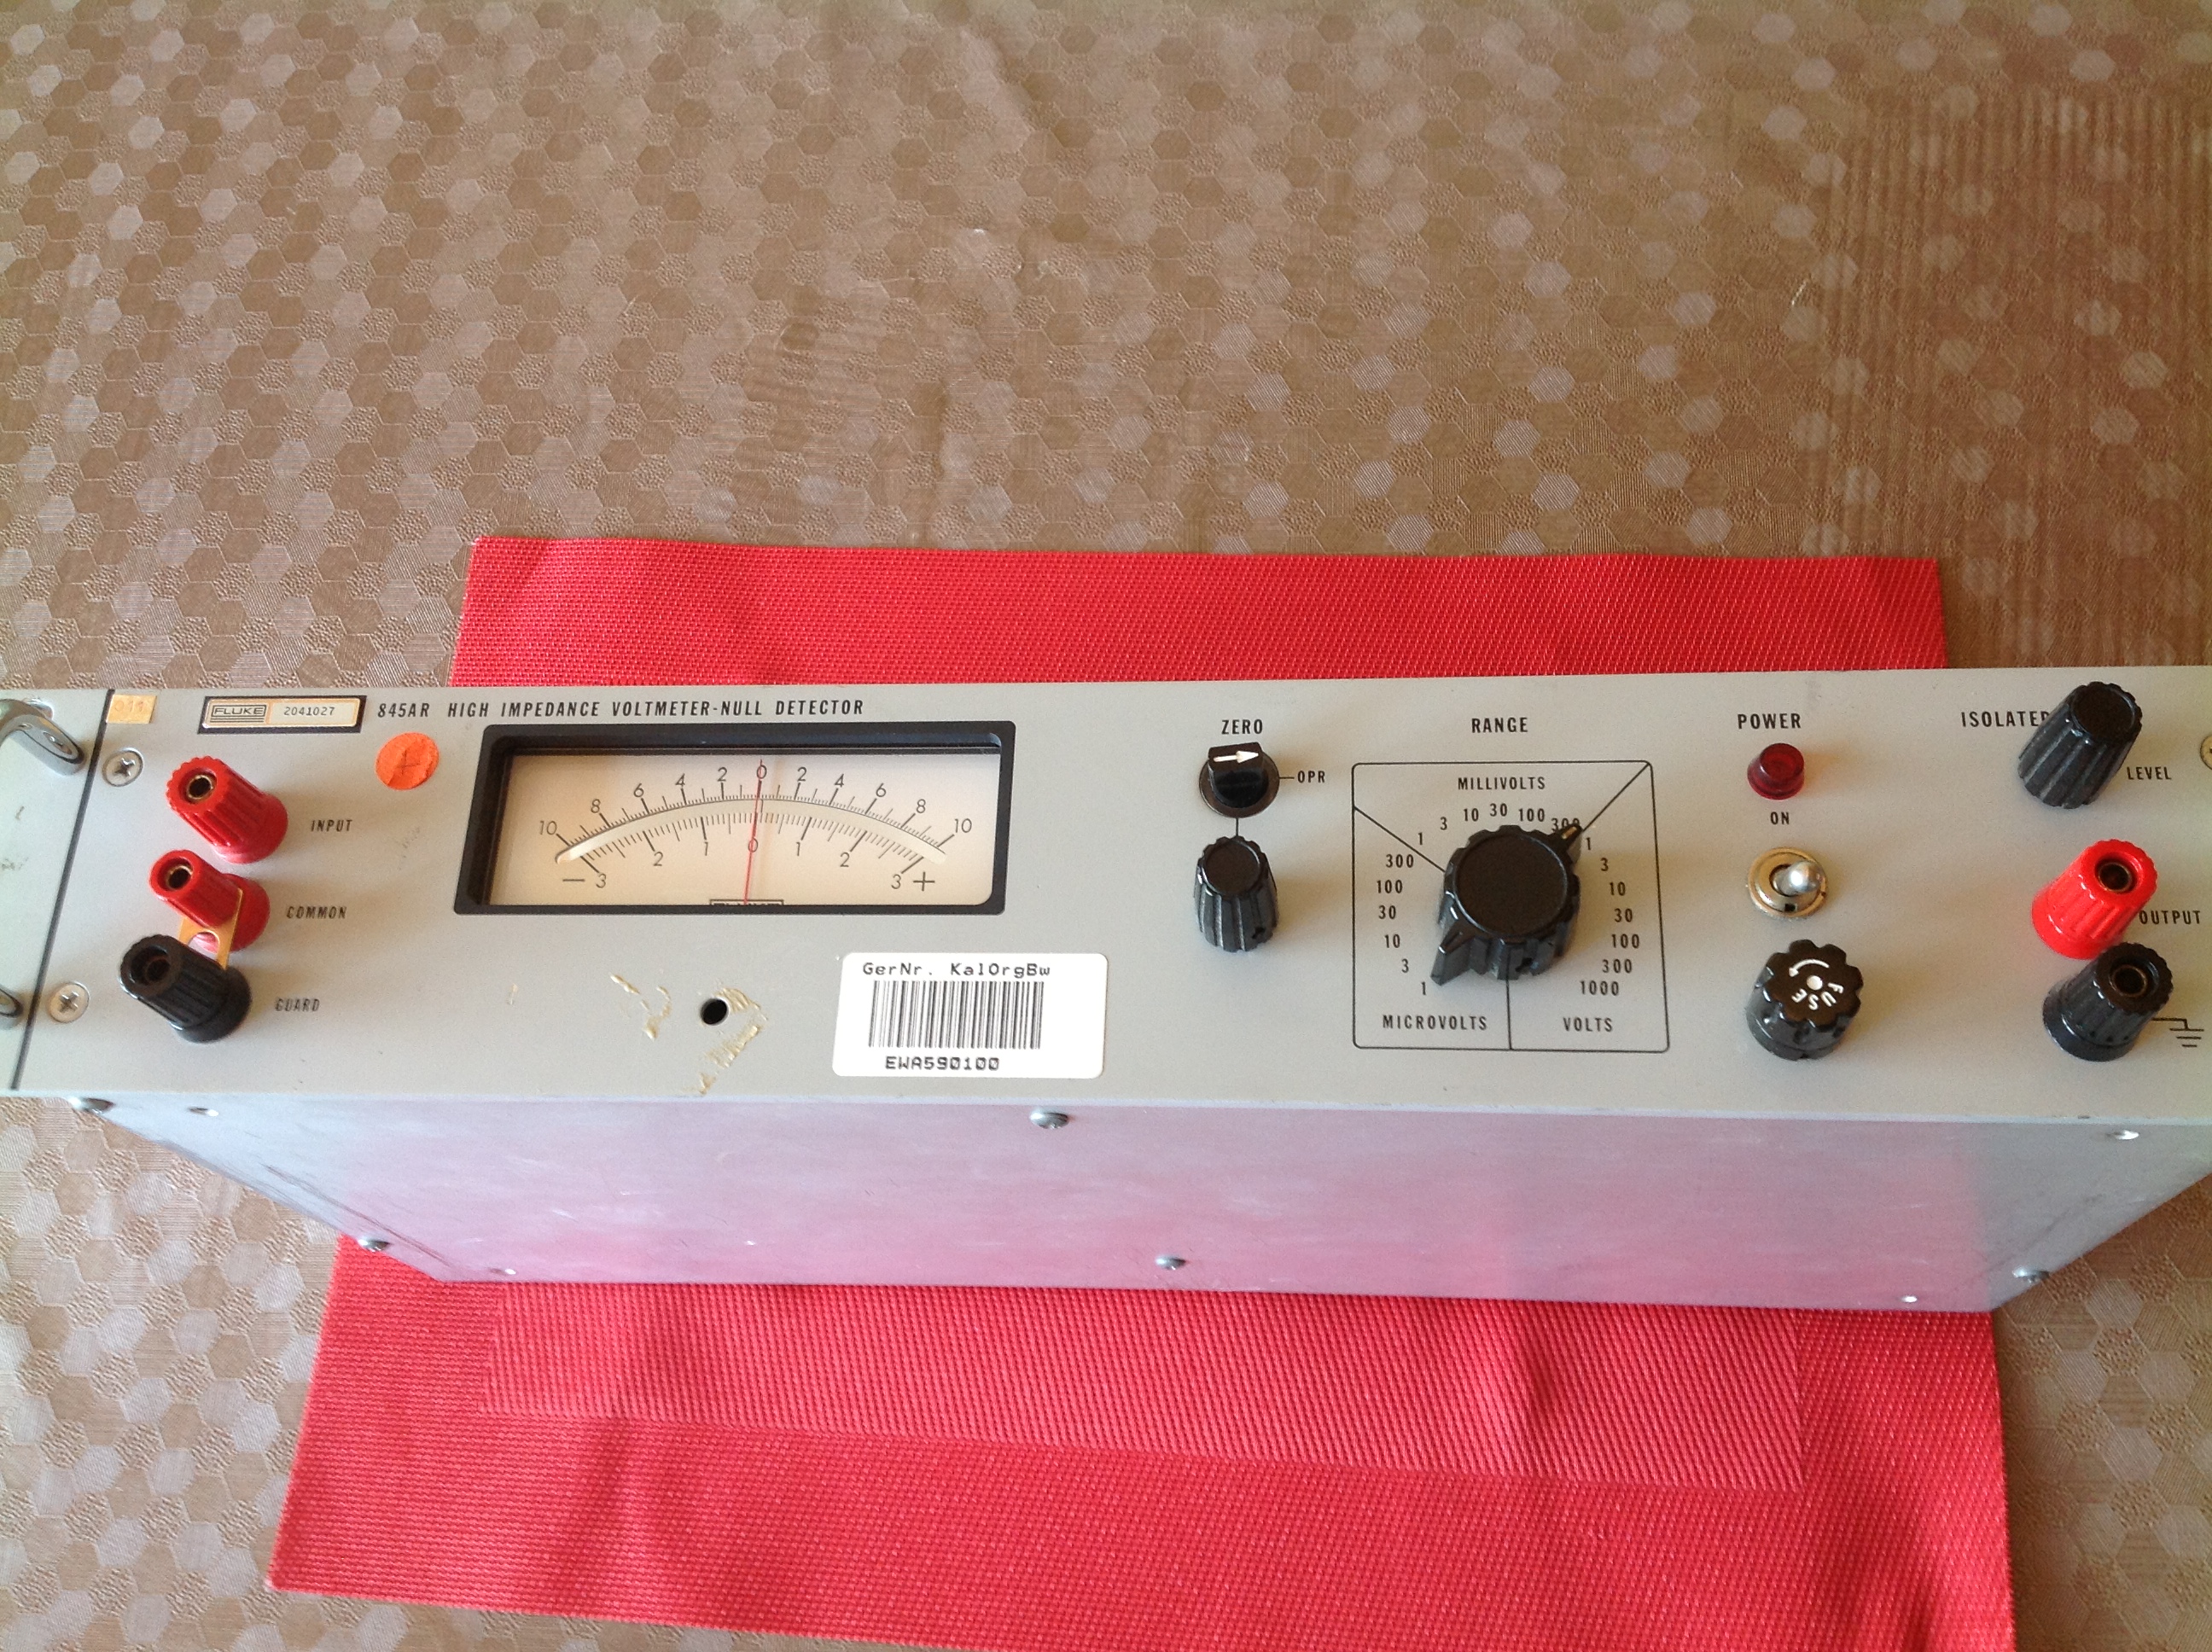 Fluke 845AR High Impedance Voltmeter-Null Detector